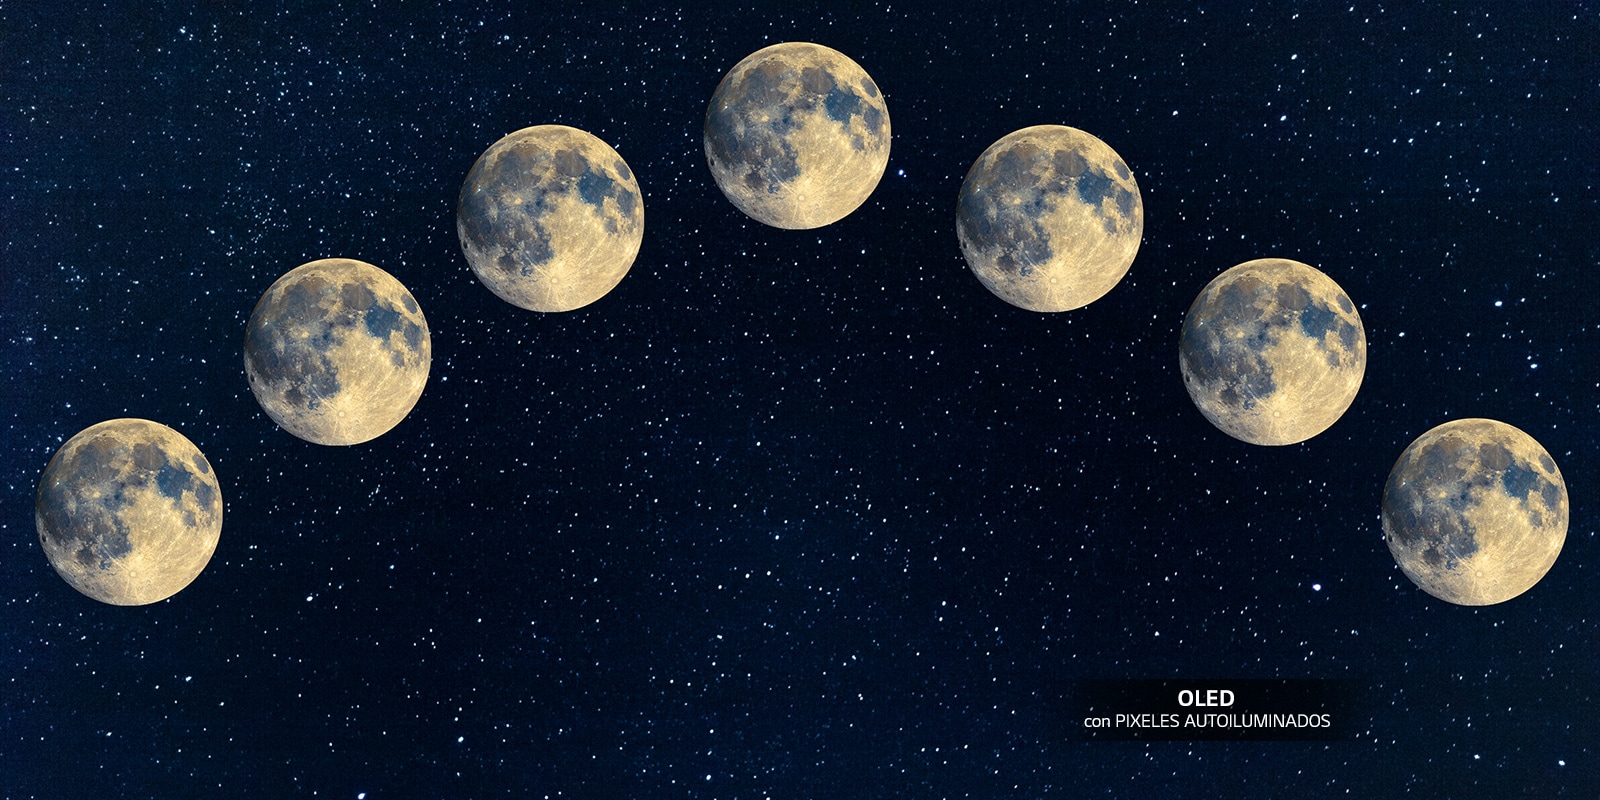 Imagen de siete lunas llenas alineadas en el cielo nocturno.